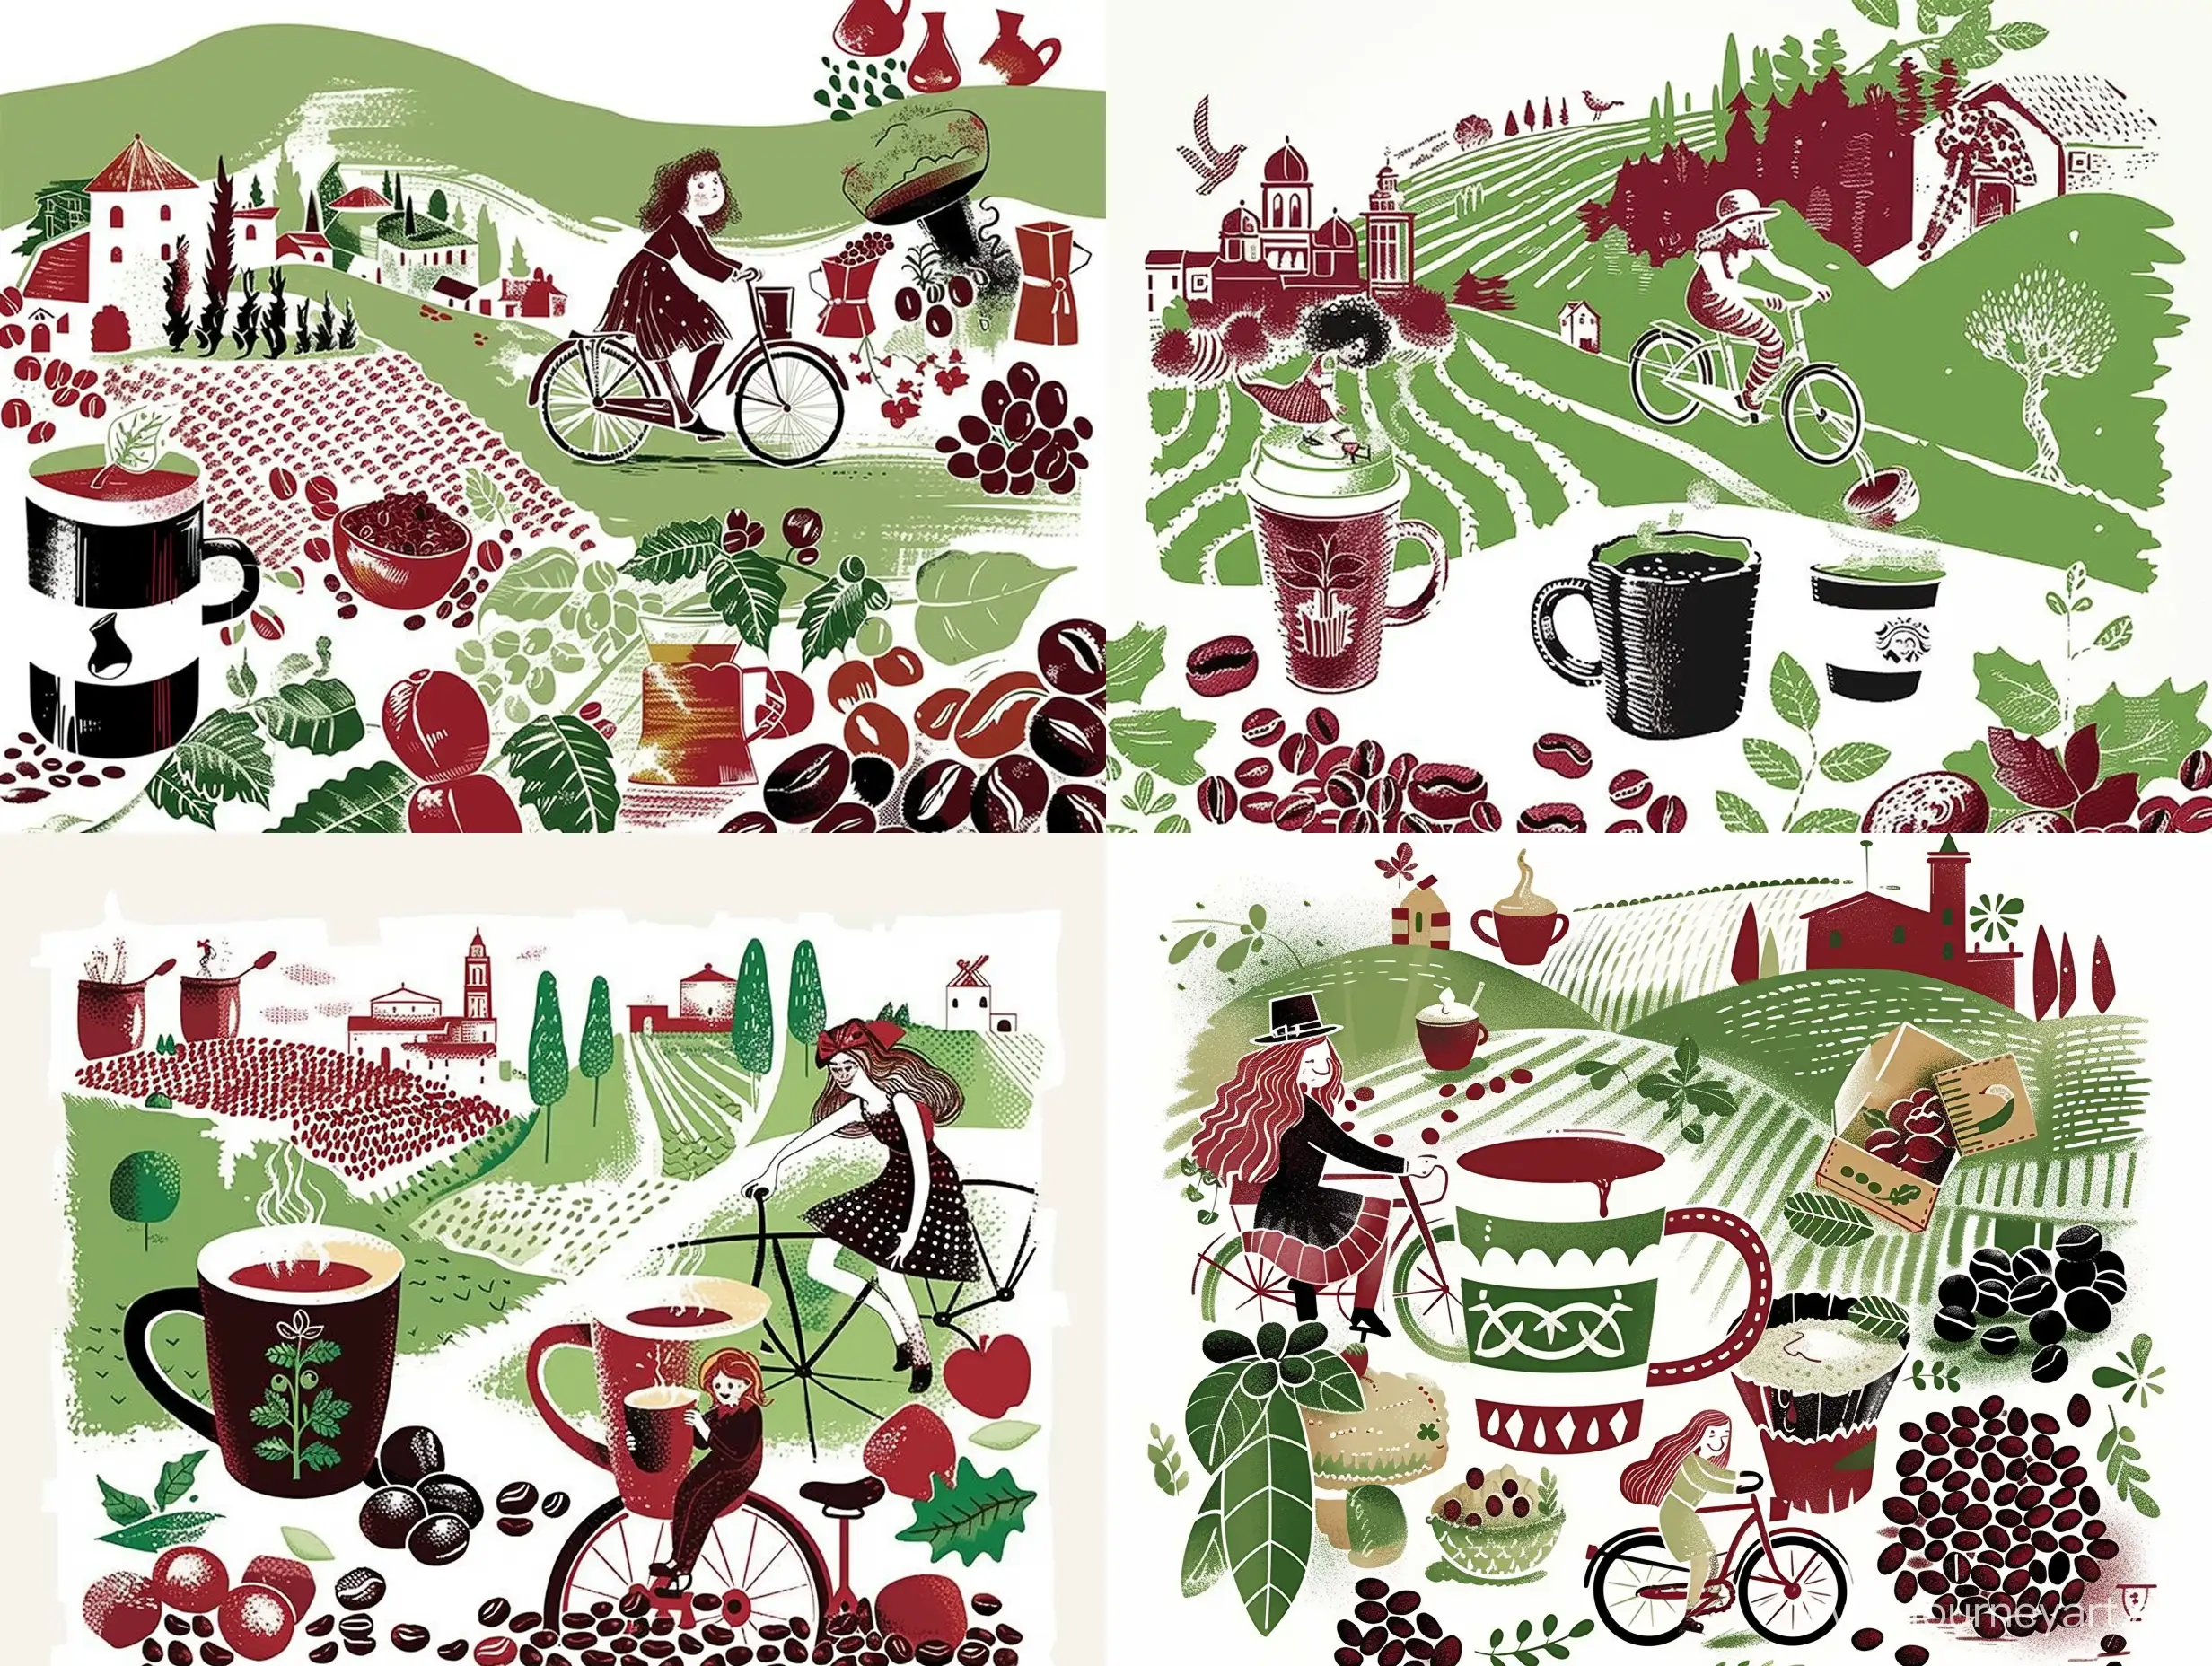 Иллюстрация в стиле авангард кофе, чашка кофе, девушка велосипеде, кружка кофе, зерна кофе, символы Италии, природа Италии в красном, зеленом и белом цветах, сверху иллюстрации белое однотонное пустое поле - sref https://i.pinimg.com/564x/6b/94/d1/6b94d172e0e340504c4207171d194e1f.jpg